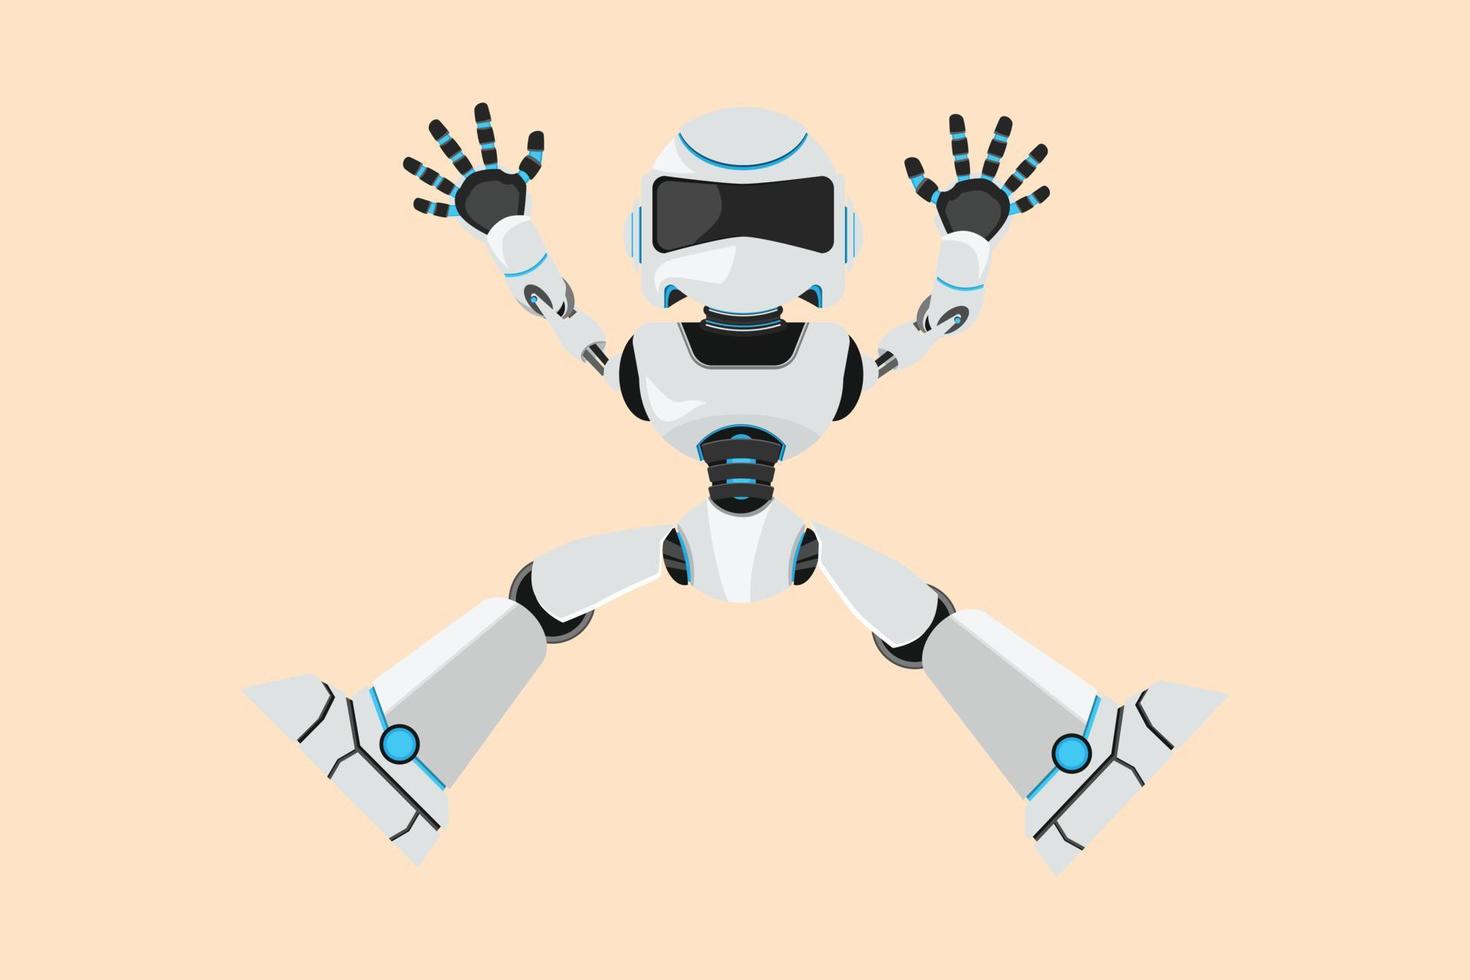 conception d'entreprise dessinant un robot heureux sautant avec les bras et les jambes levés. développement technologique futur. processus d'intelligence artificielle et d'apprentissage automatique. illustration vectorielle de style dessin animé plat vecteur